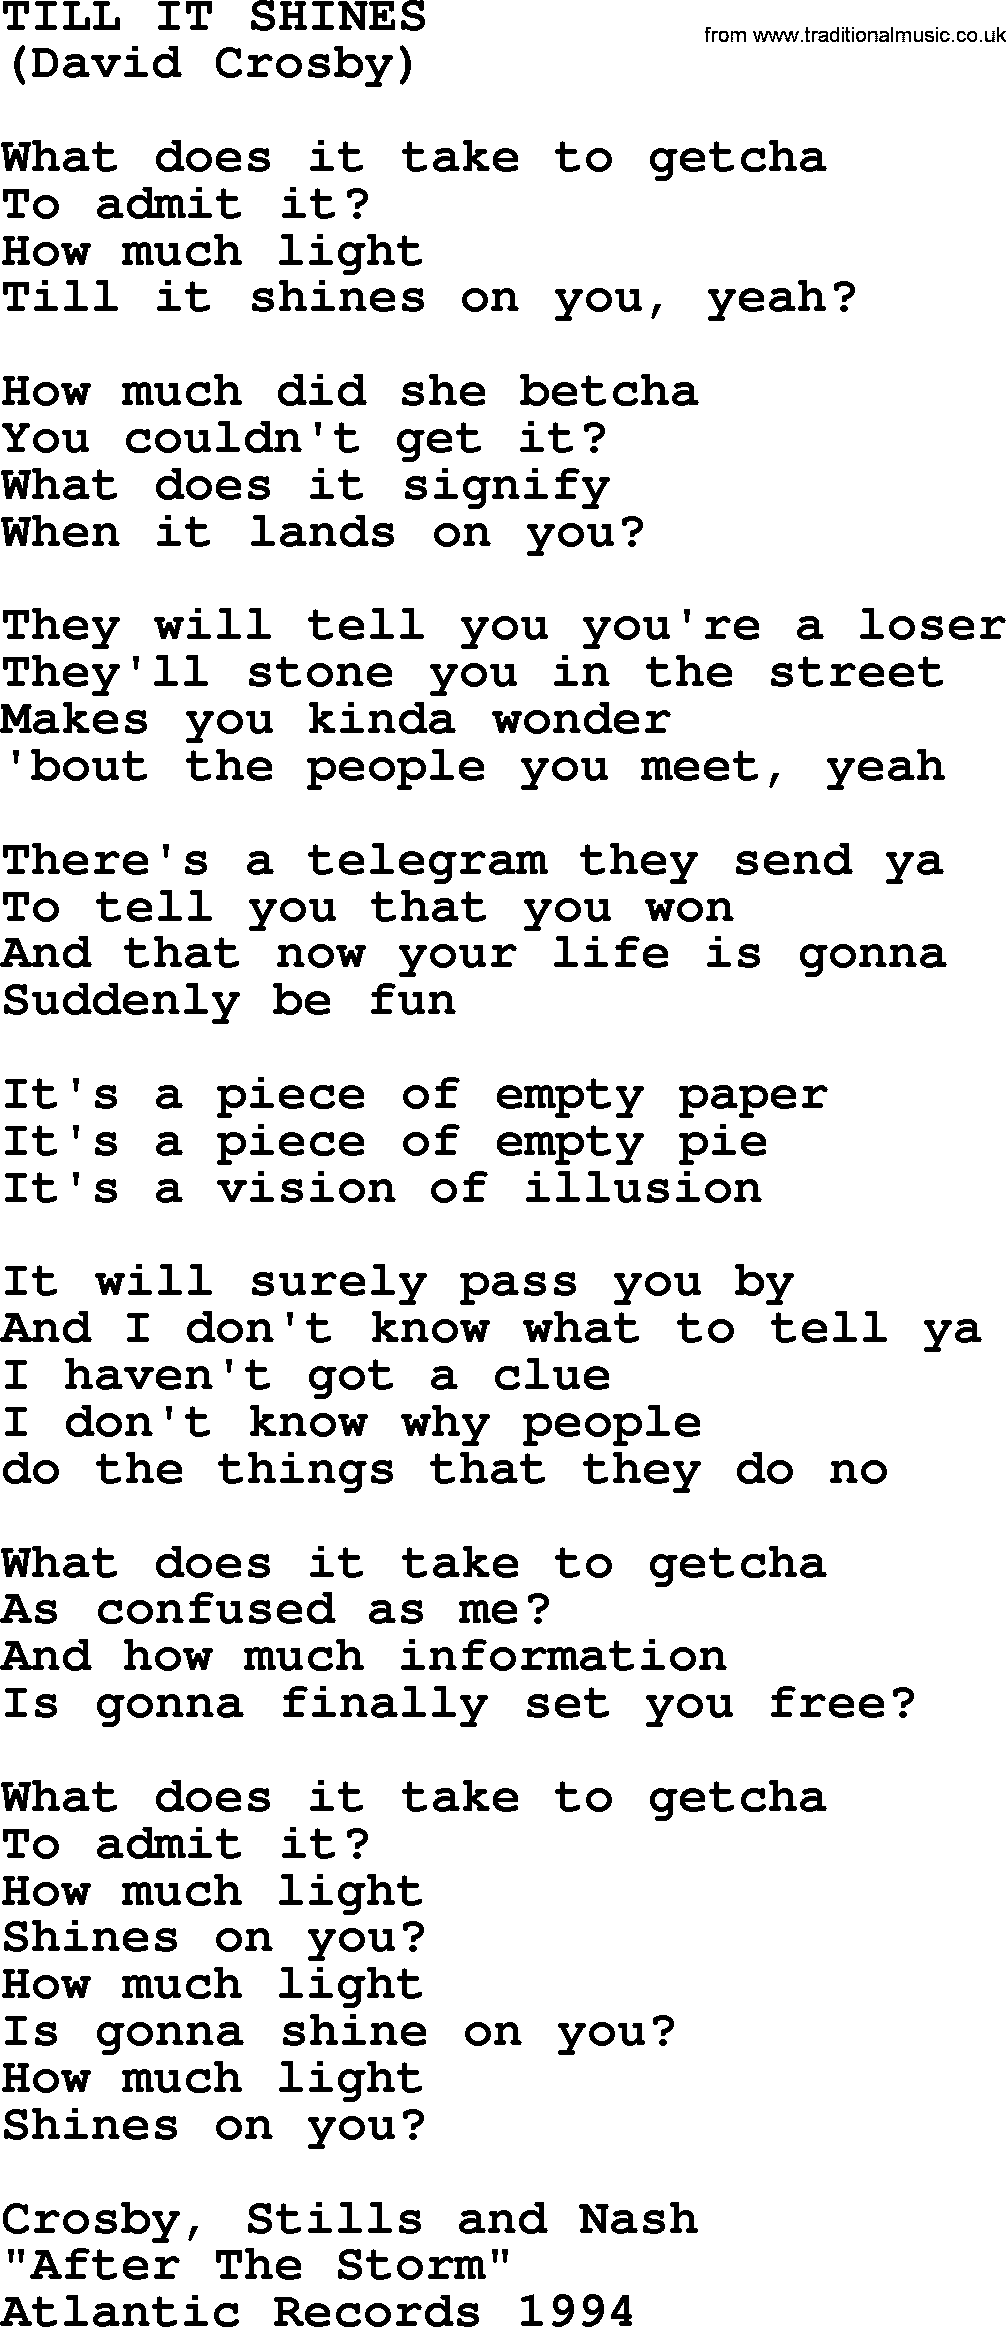 The Byrds song Till It Shines, lyrics